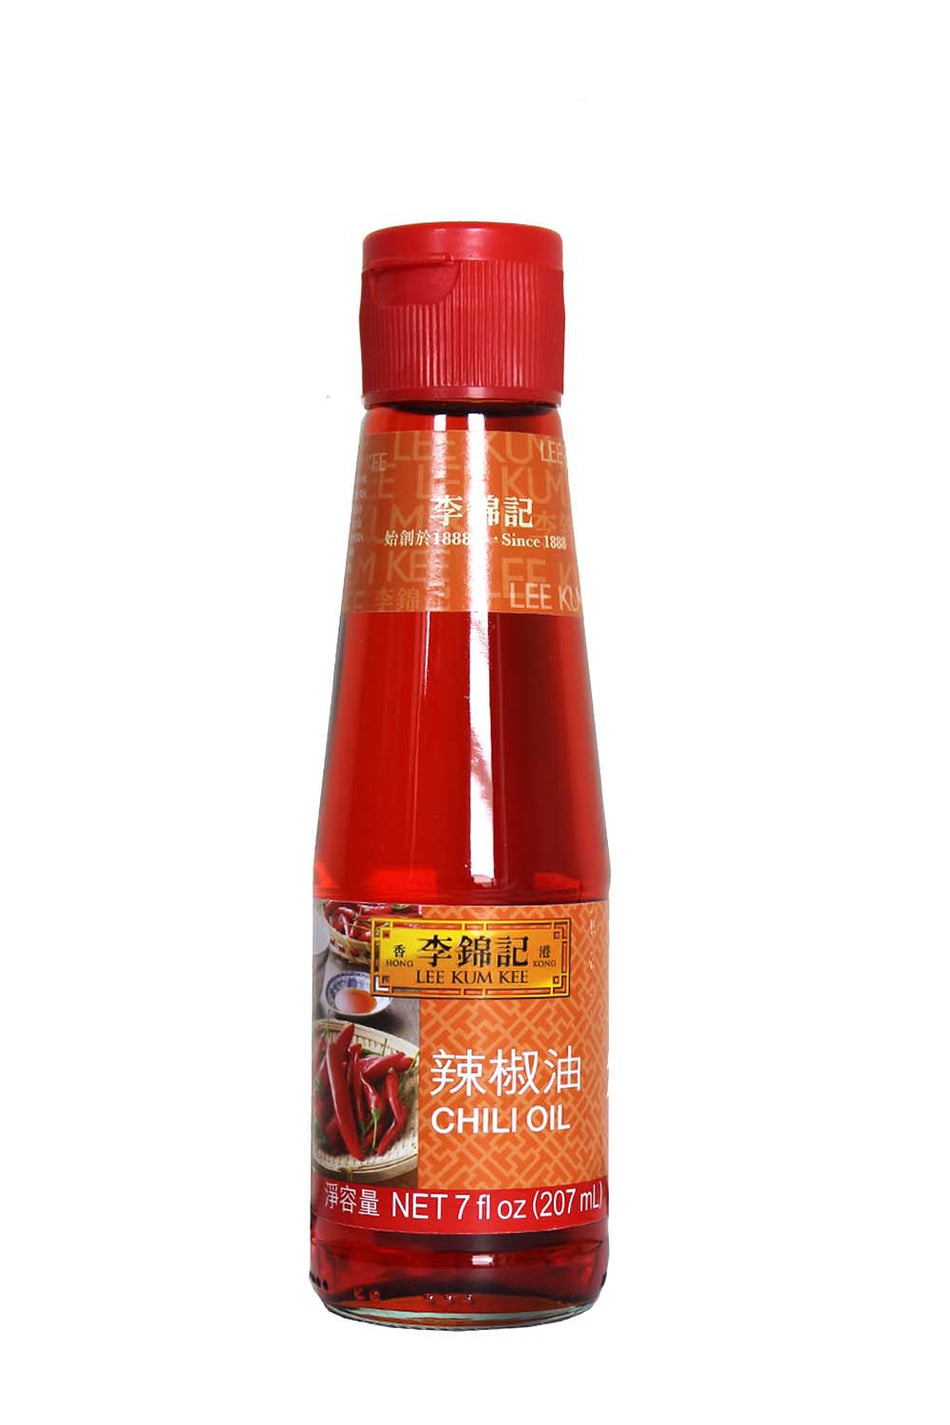 Lee Kum Kee  chili oil